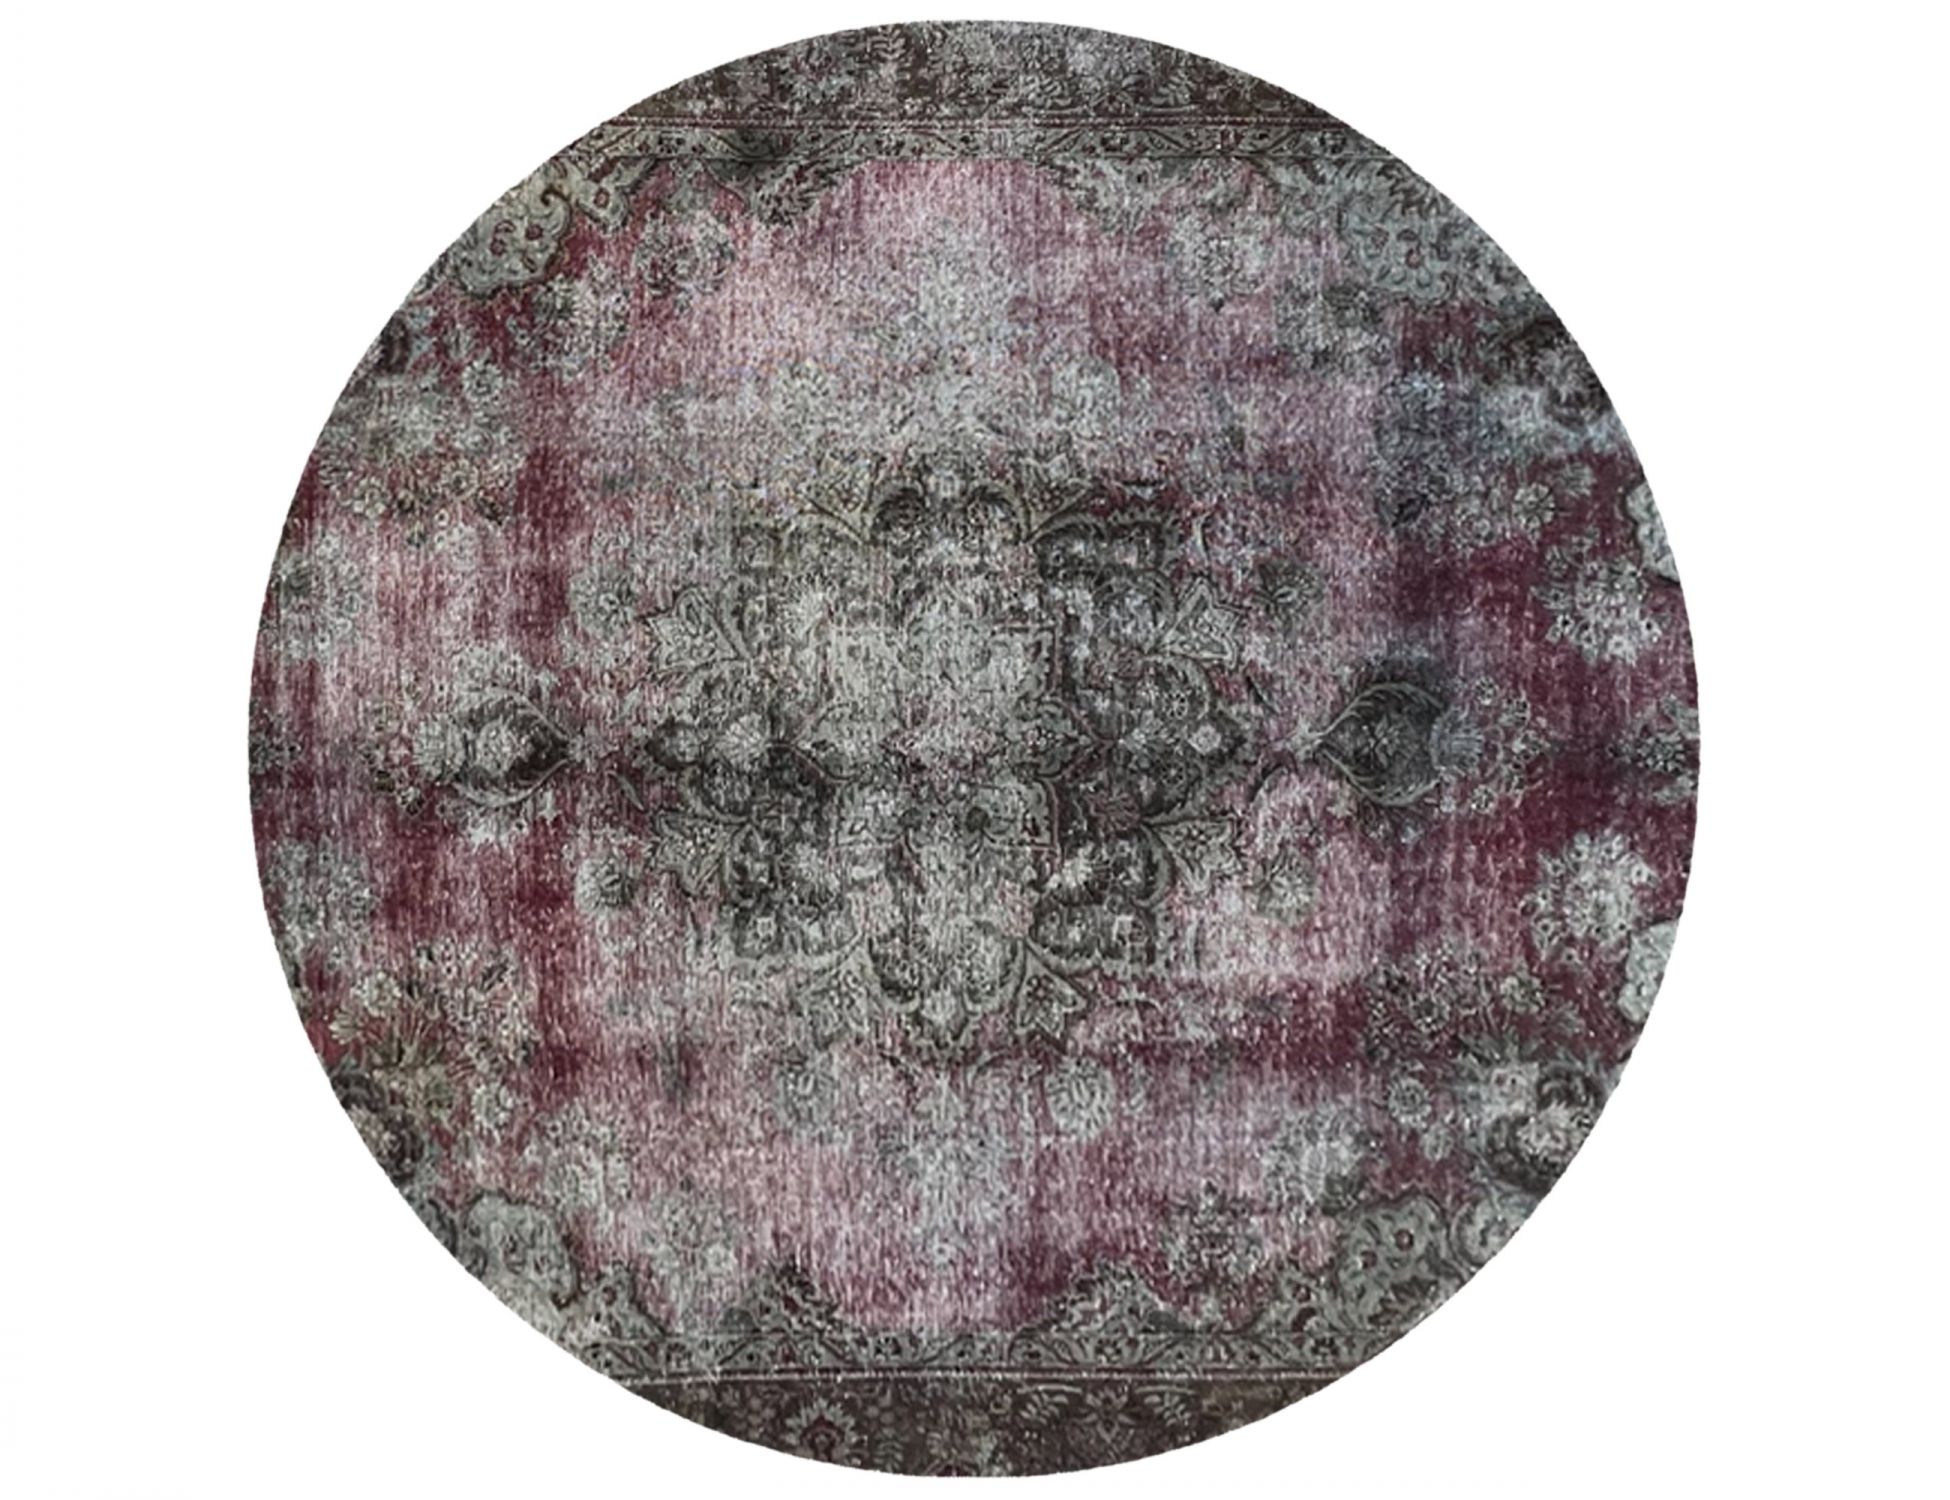 Vintage Teppich rund  lila <br/>261 x 261 cm